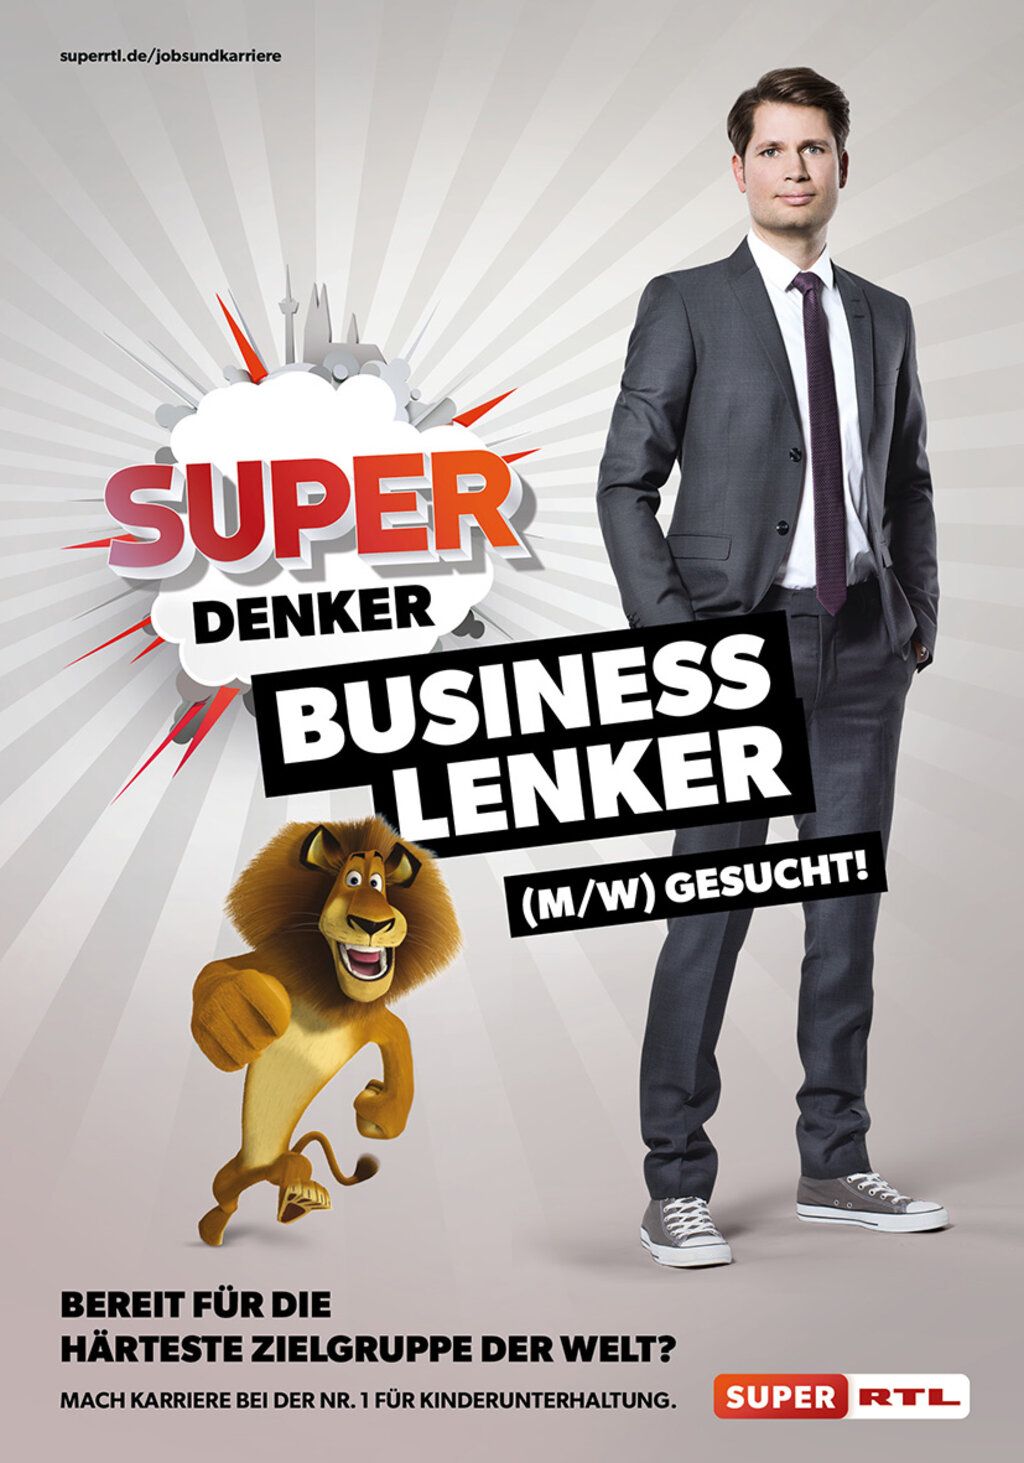 Junger Mann im Anzug mit Turnschuhen wirbt für einen Job bei Super RTL. Text: Super-Denker-Business-Lenker.